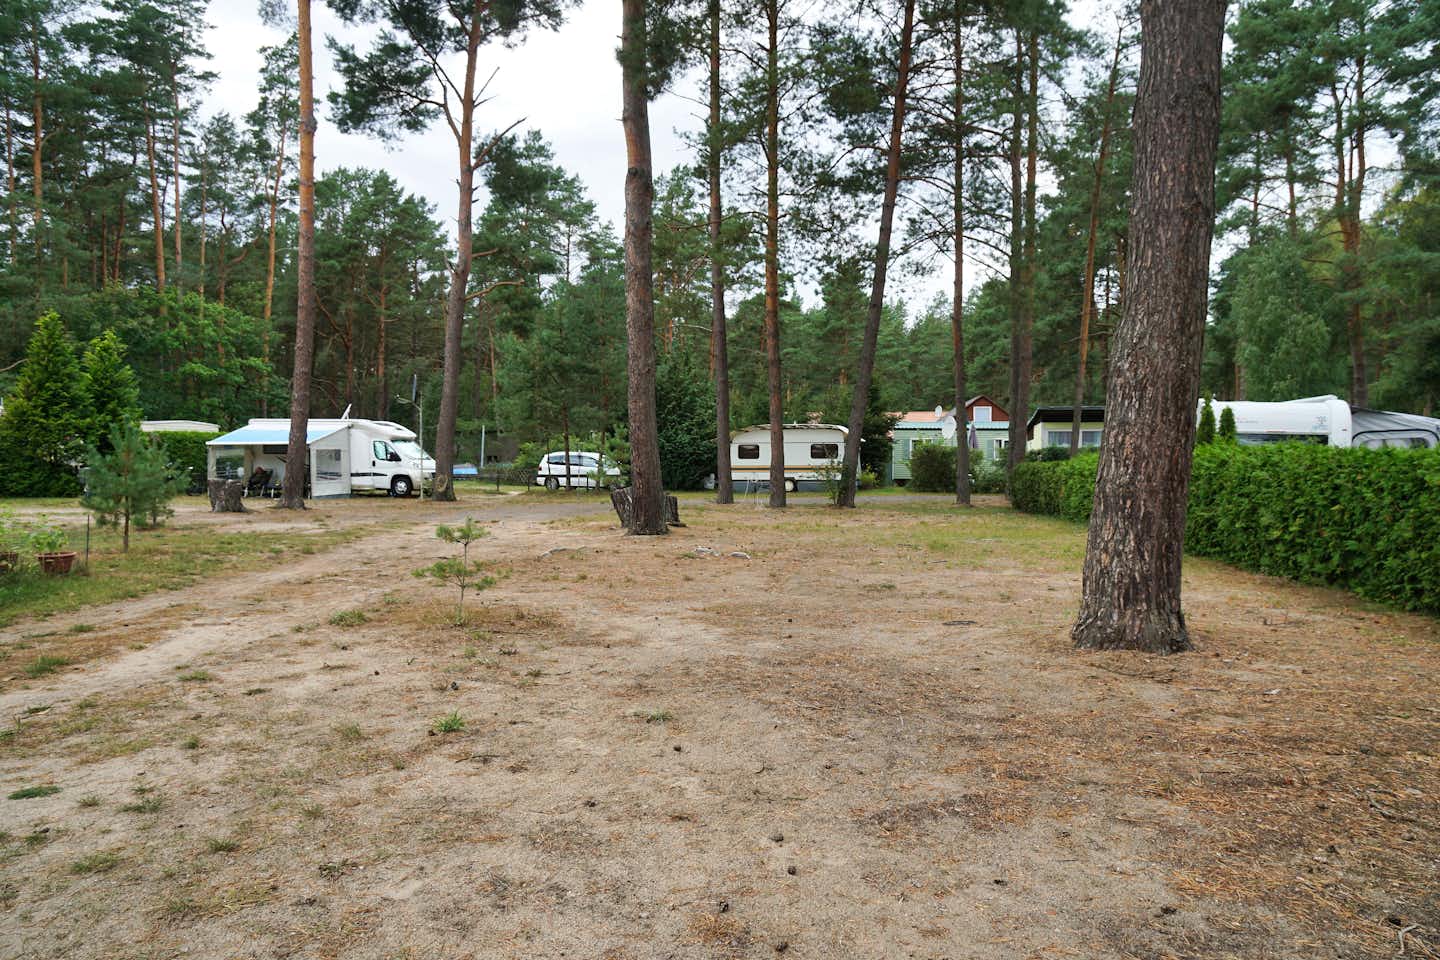 Camping am Reiherholz - Standplatz unter Baeunmen